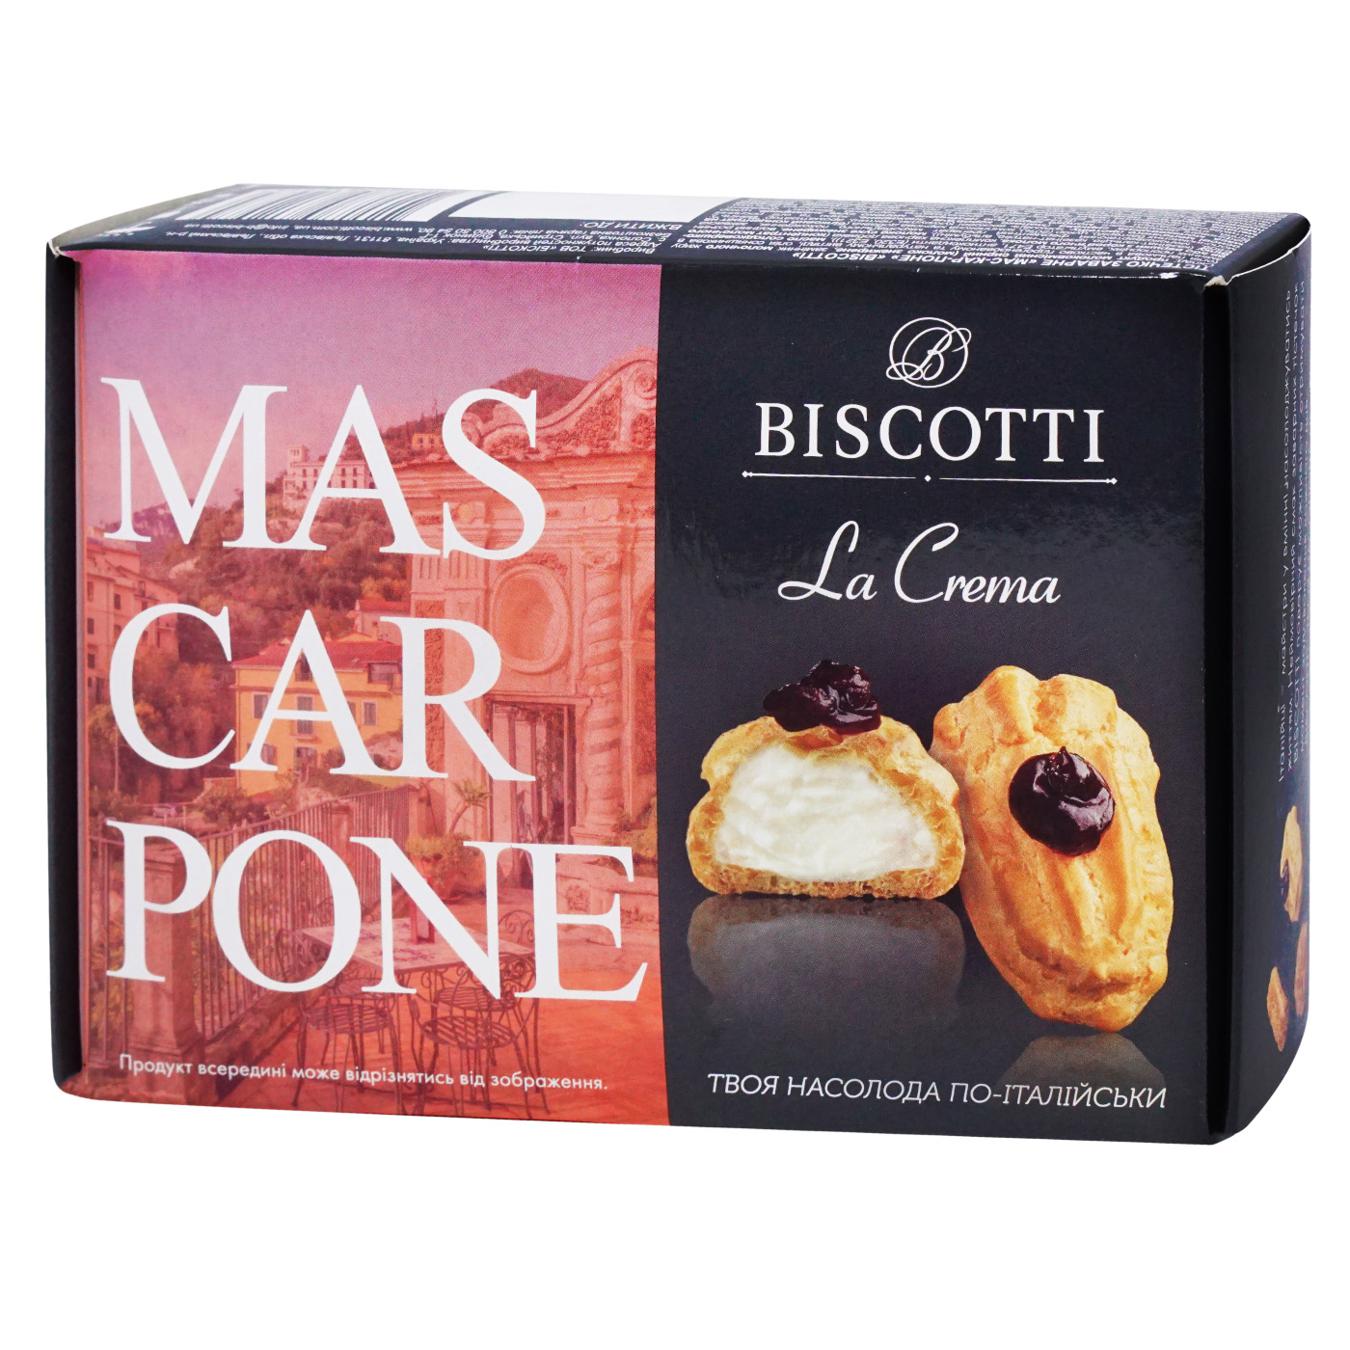 Cake Biscotti Mas-car-pone La Crema Familitto 200g